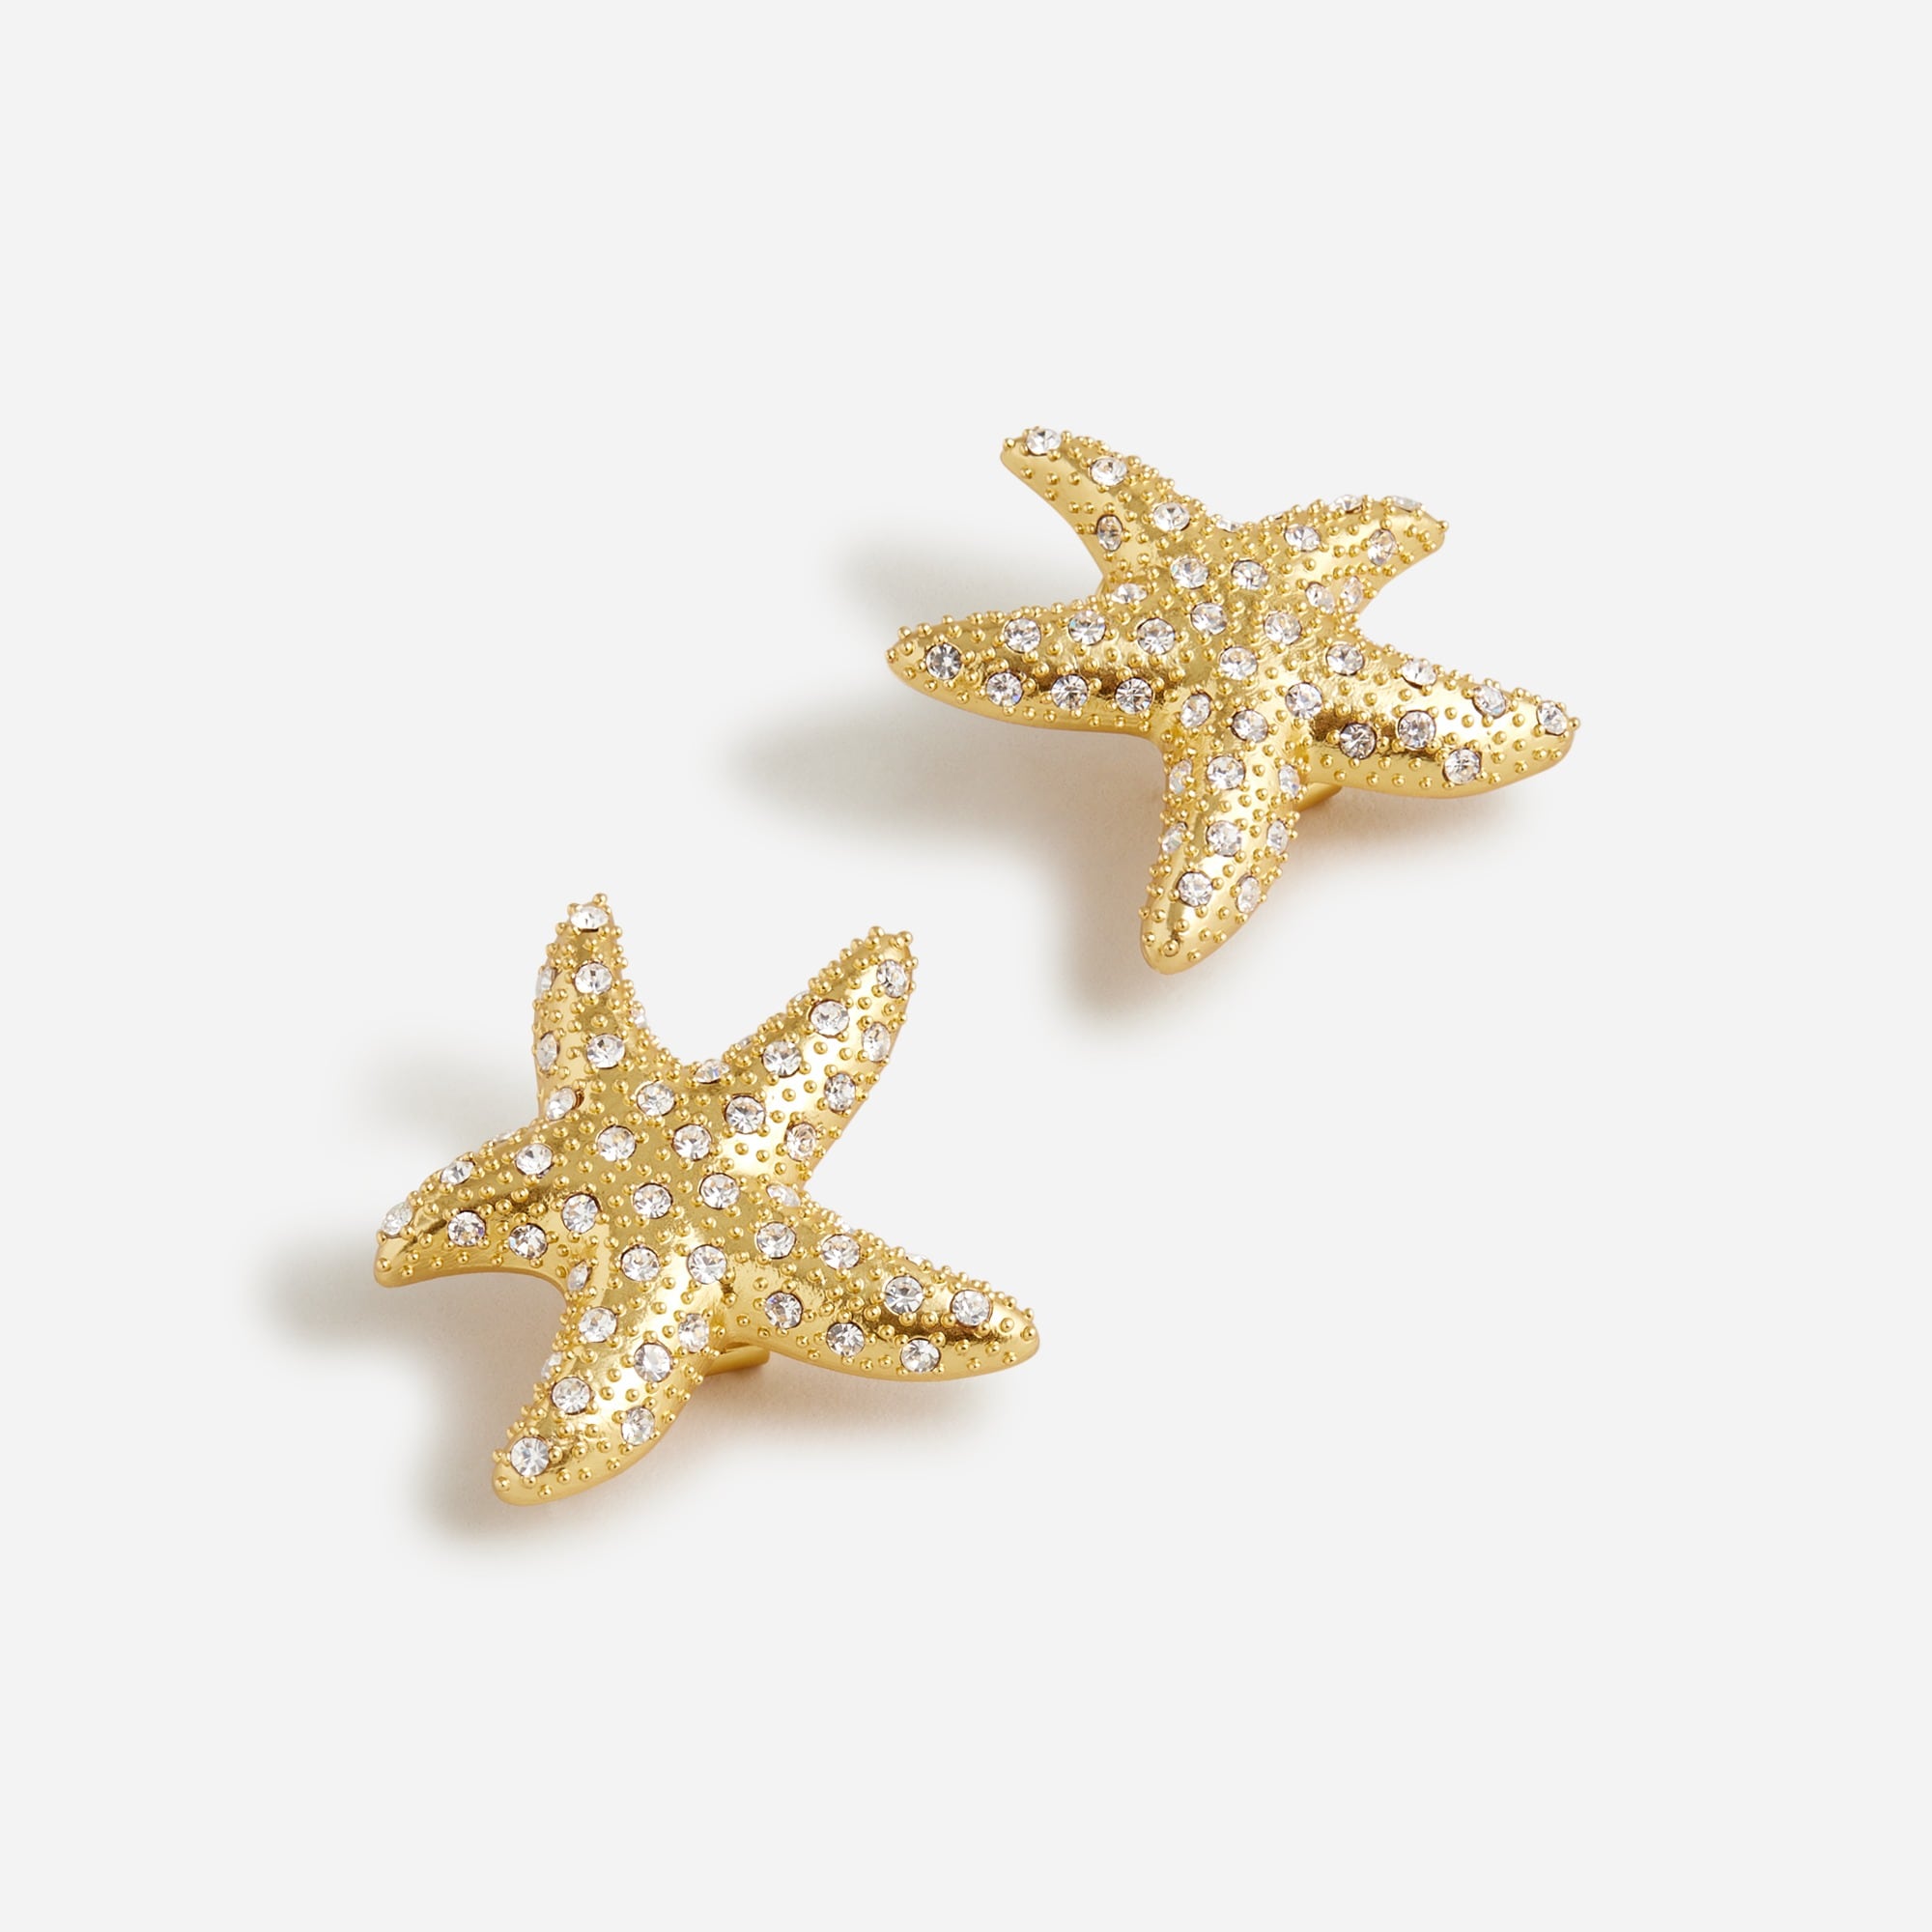  Starfish stud earrings with pav&eacute; crystals